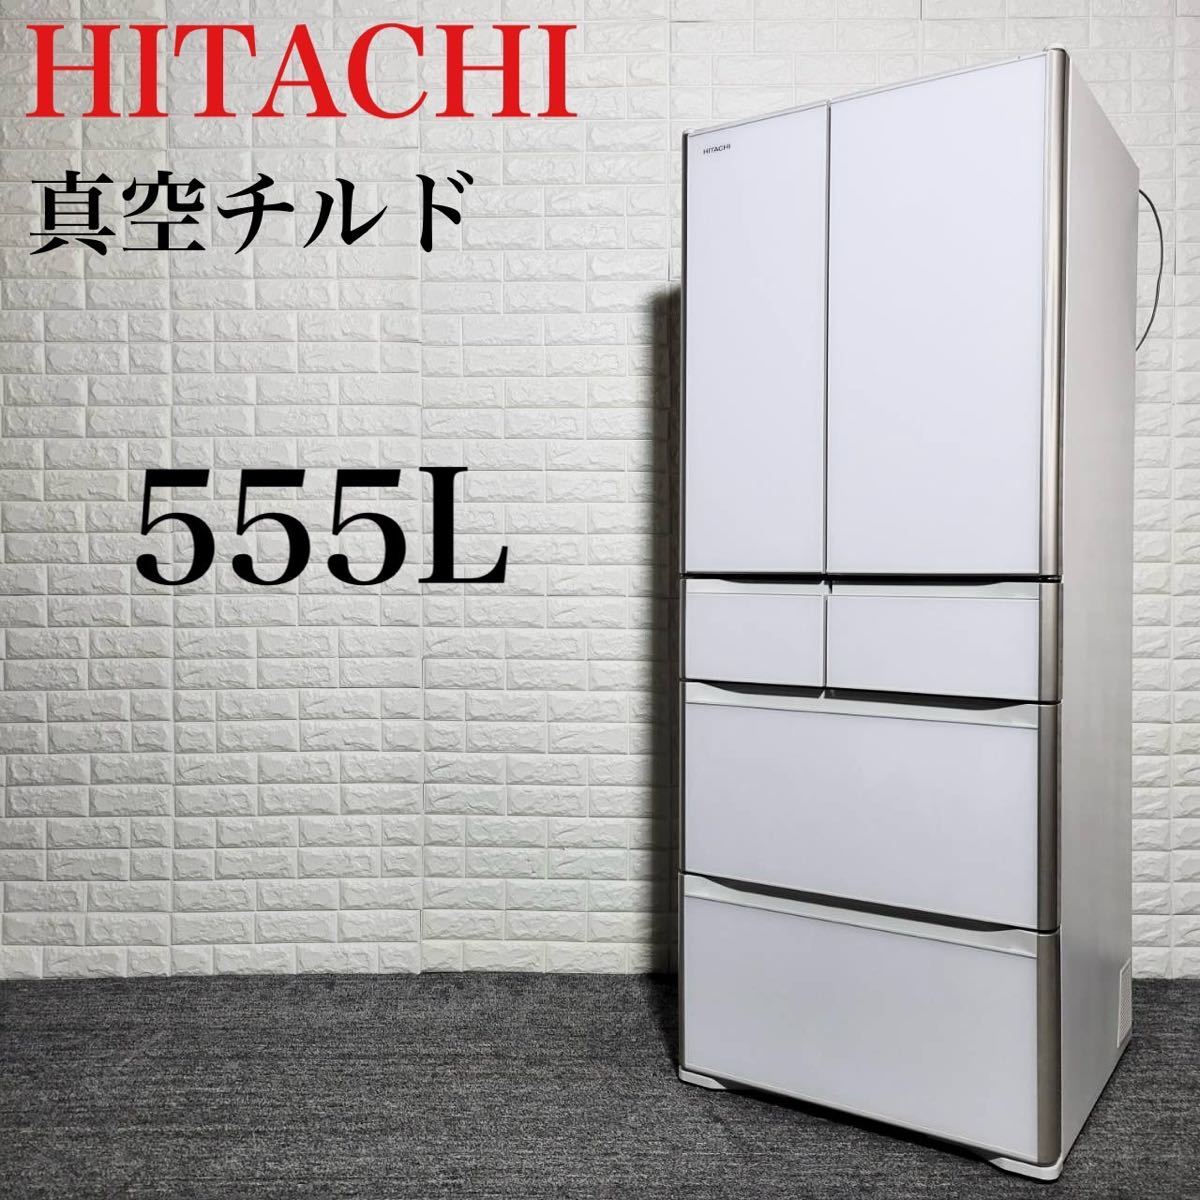 HITACHI 冷蔵庫 R-XG56J 真空チルド 大容量 清潔感 555L M0891